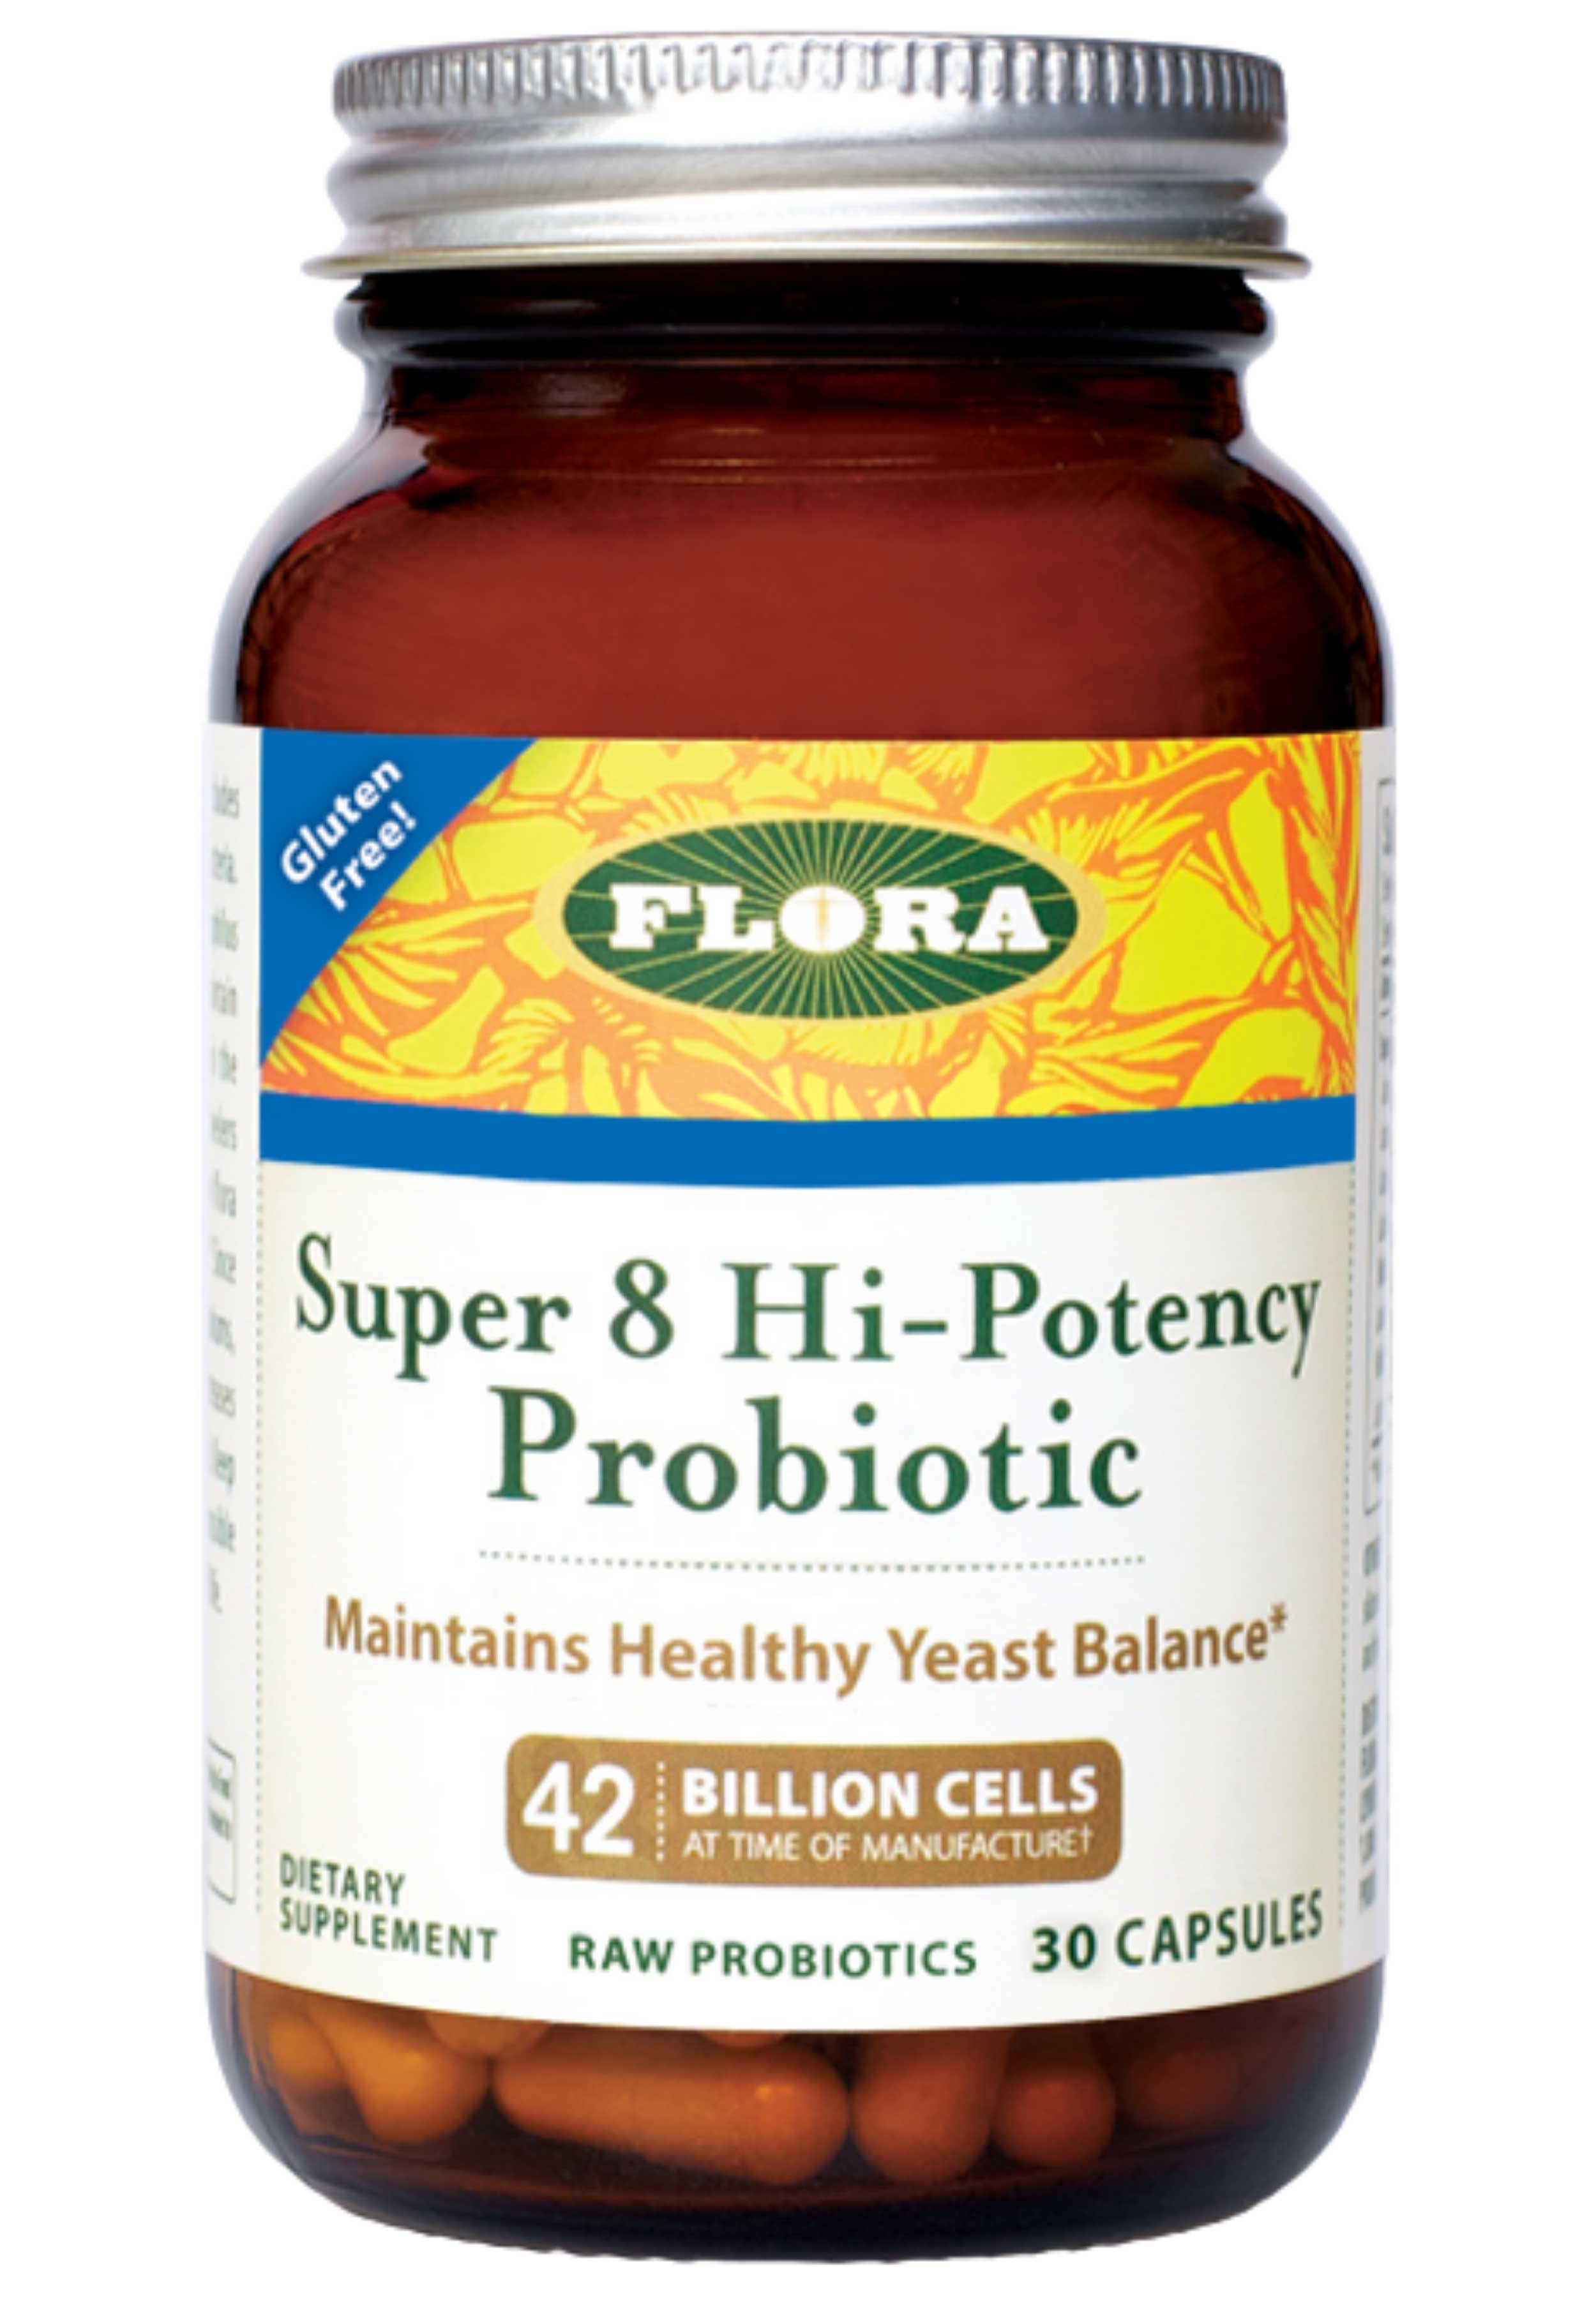 Flora Super 8 Hi-Potency Probiotic